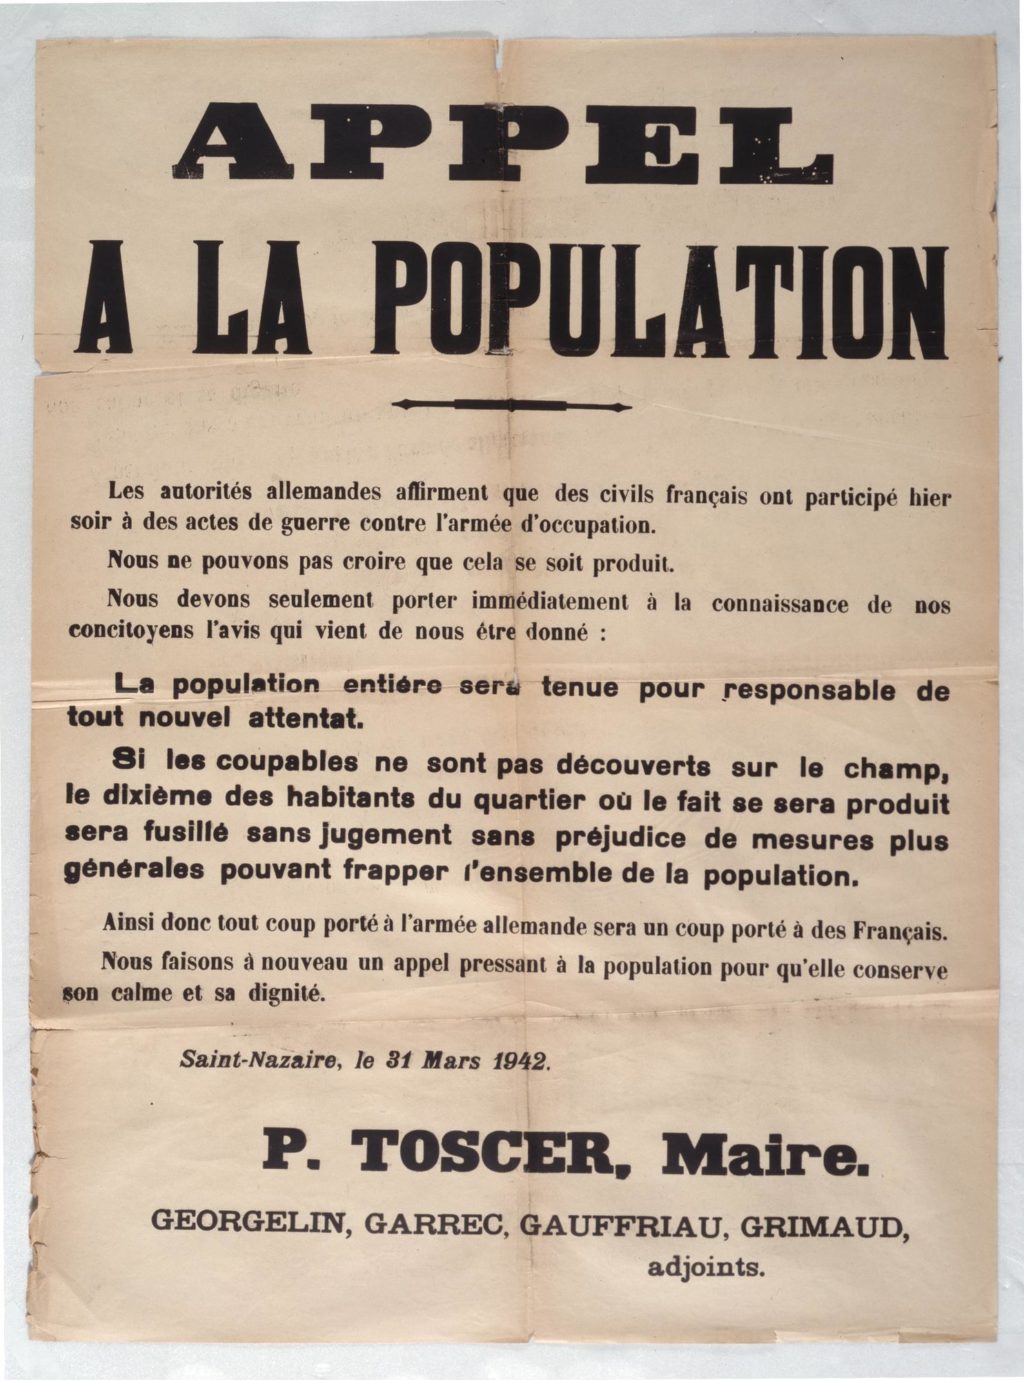 Appel à la population du maire Pierre Toscer, daté du 31 mars 1942, avertissant les Nazairiens des menaces de représailles allemandes suite à la double explosion.